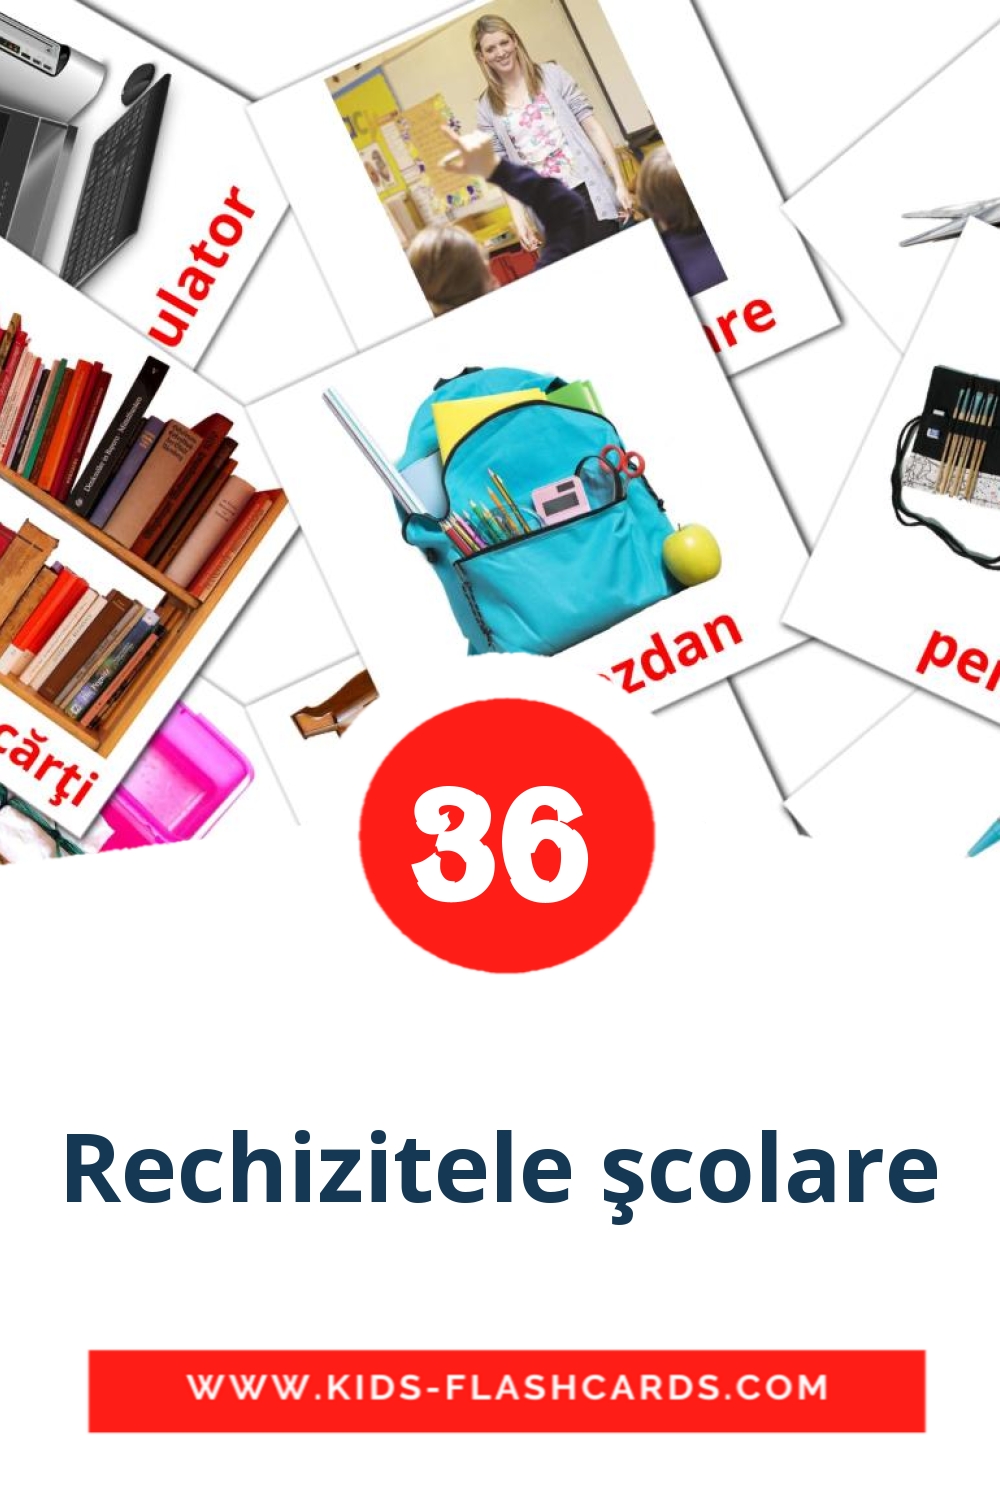 36 Rechizitele şcolare Bildkarten für den Kindergarten auf Rumänisch